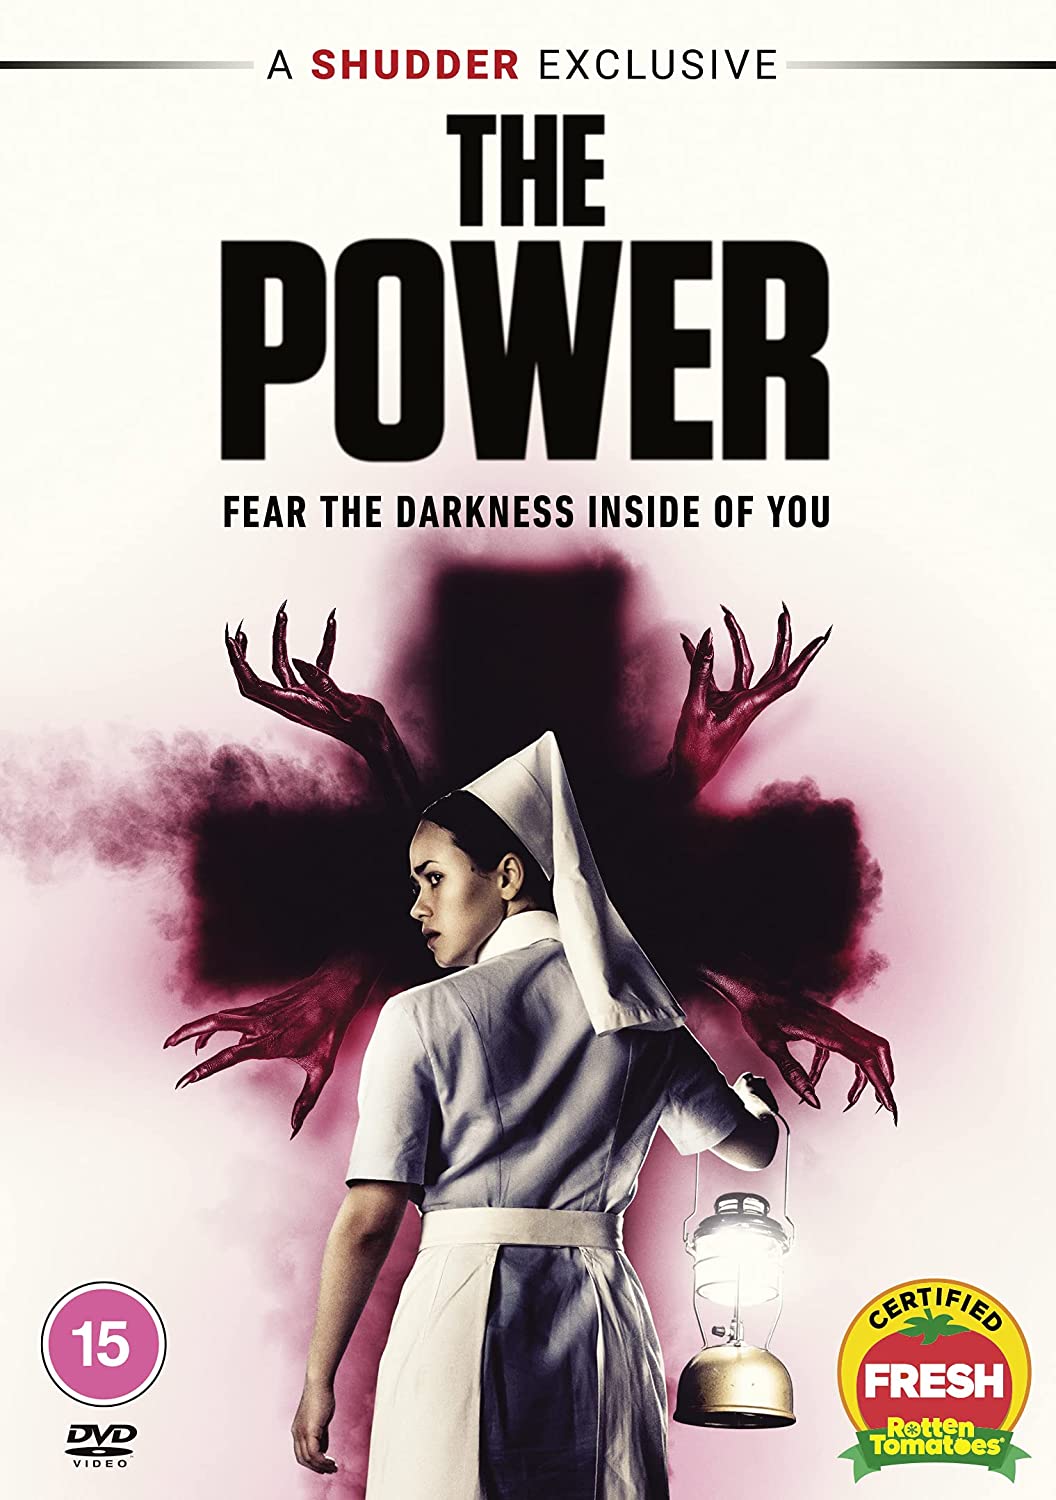 The Power (SHUDDER) [2021] - Horror/Mystery [DVD]